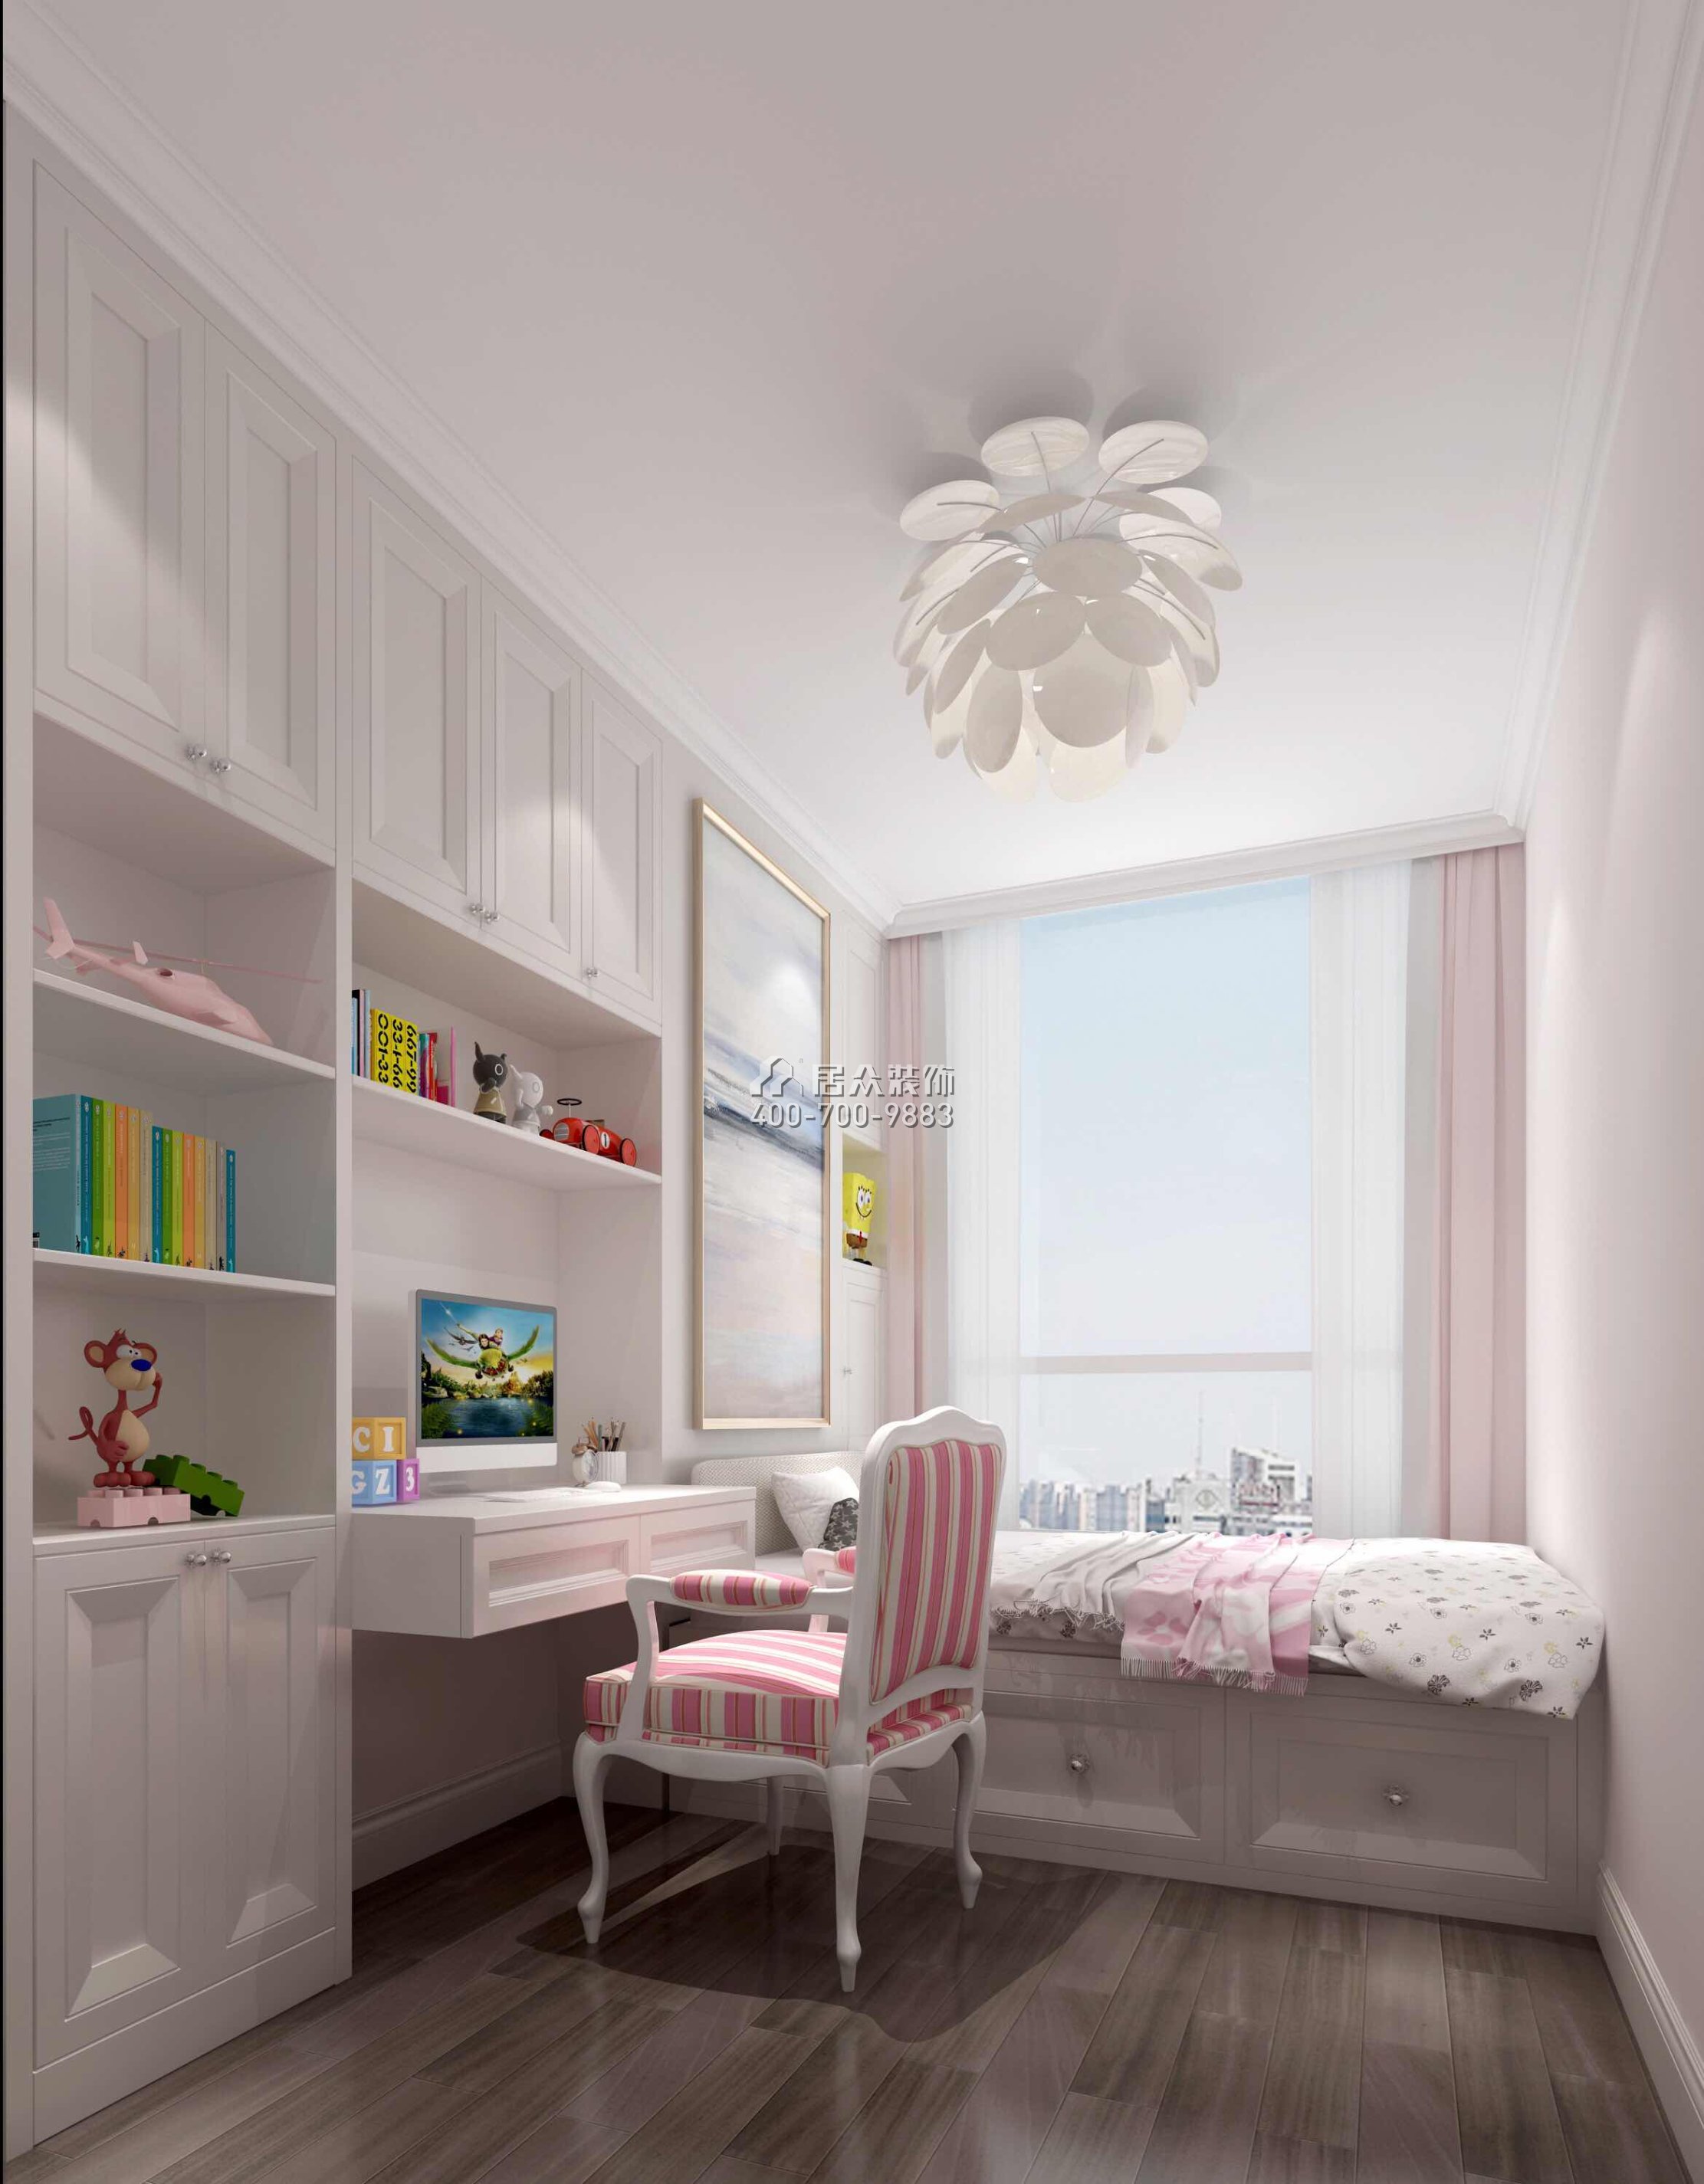 壹方中心220平方米美式風格平層戶型臥室書房一體裝修效果圖